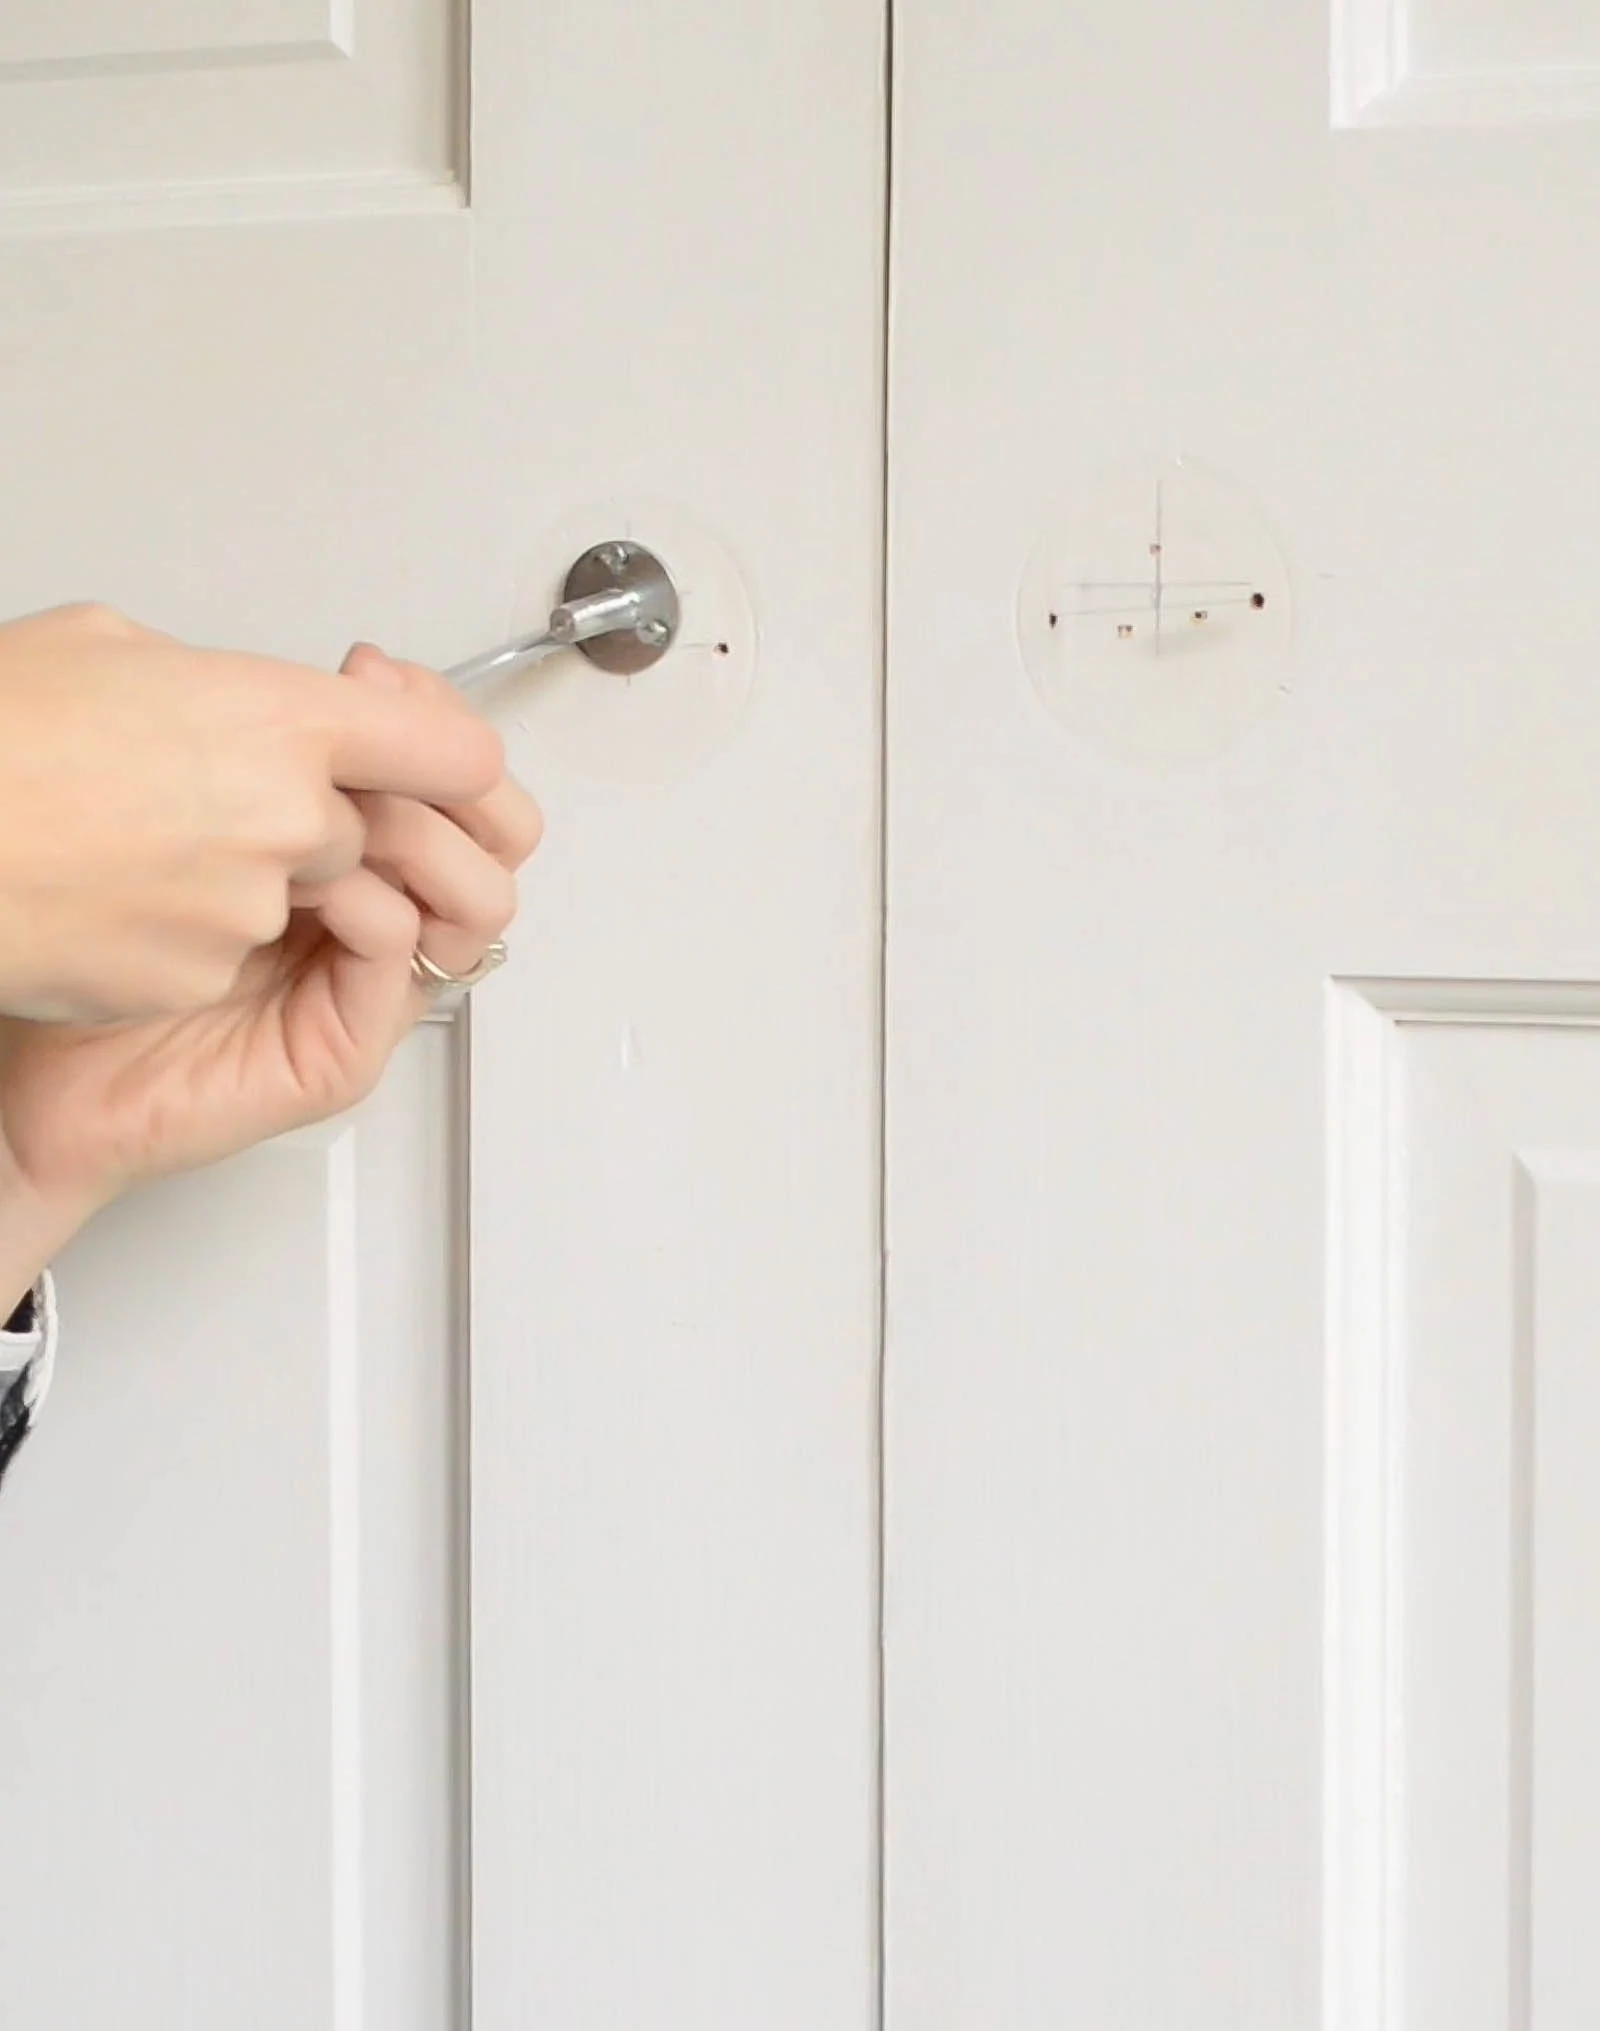 Screwing in a door knob